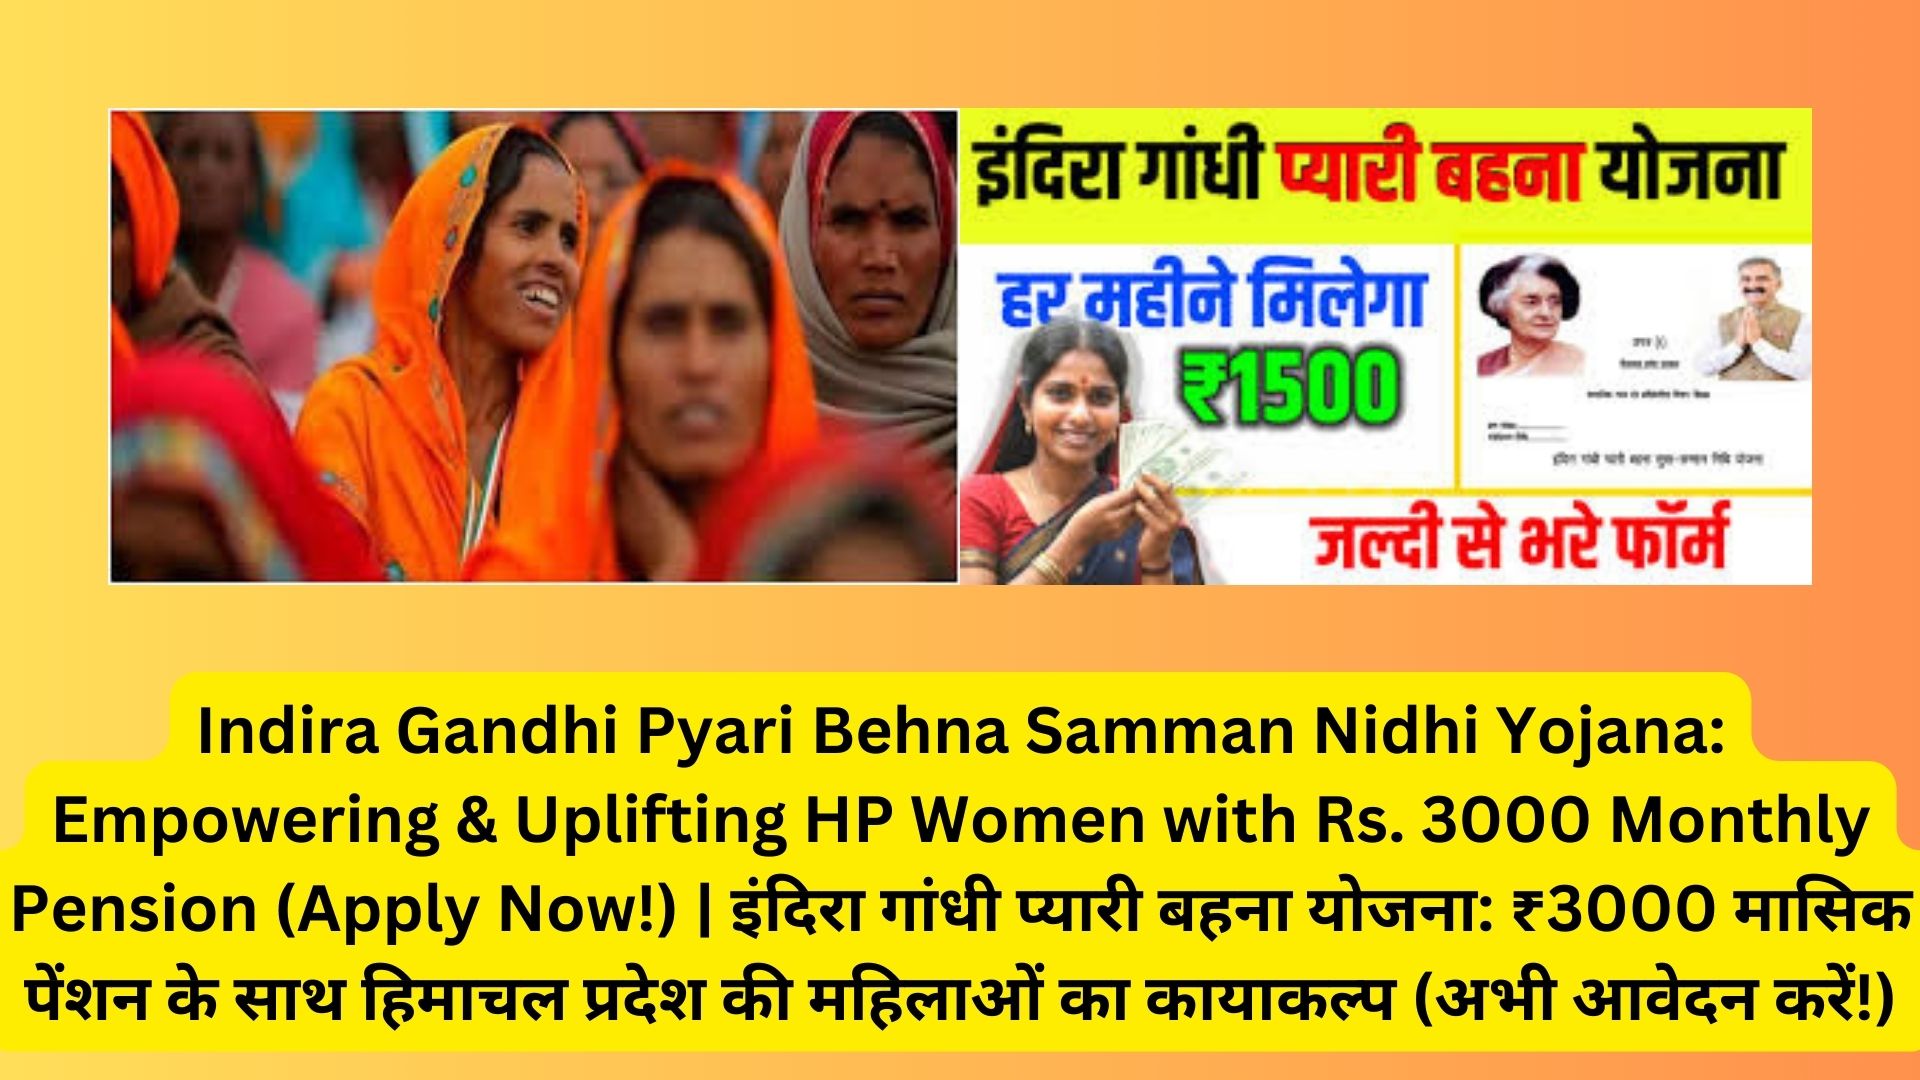 Indira Gandhi Pyari Behna Samman Nidhi Yojana: Empowering & Uplifting HP Women with Rs. 3000 Monthly Pension (Apply Now!) | इंदिरा गांधी प्यारी बहना योजना: ₹3000 मासिक पेंशन के साथ हिमाचल प्रदेश की महिलाओं का कायाकल्प (अभी आवेदन करें!)